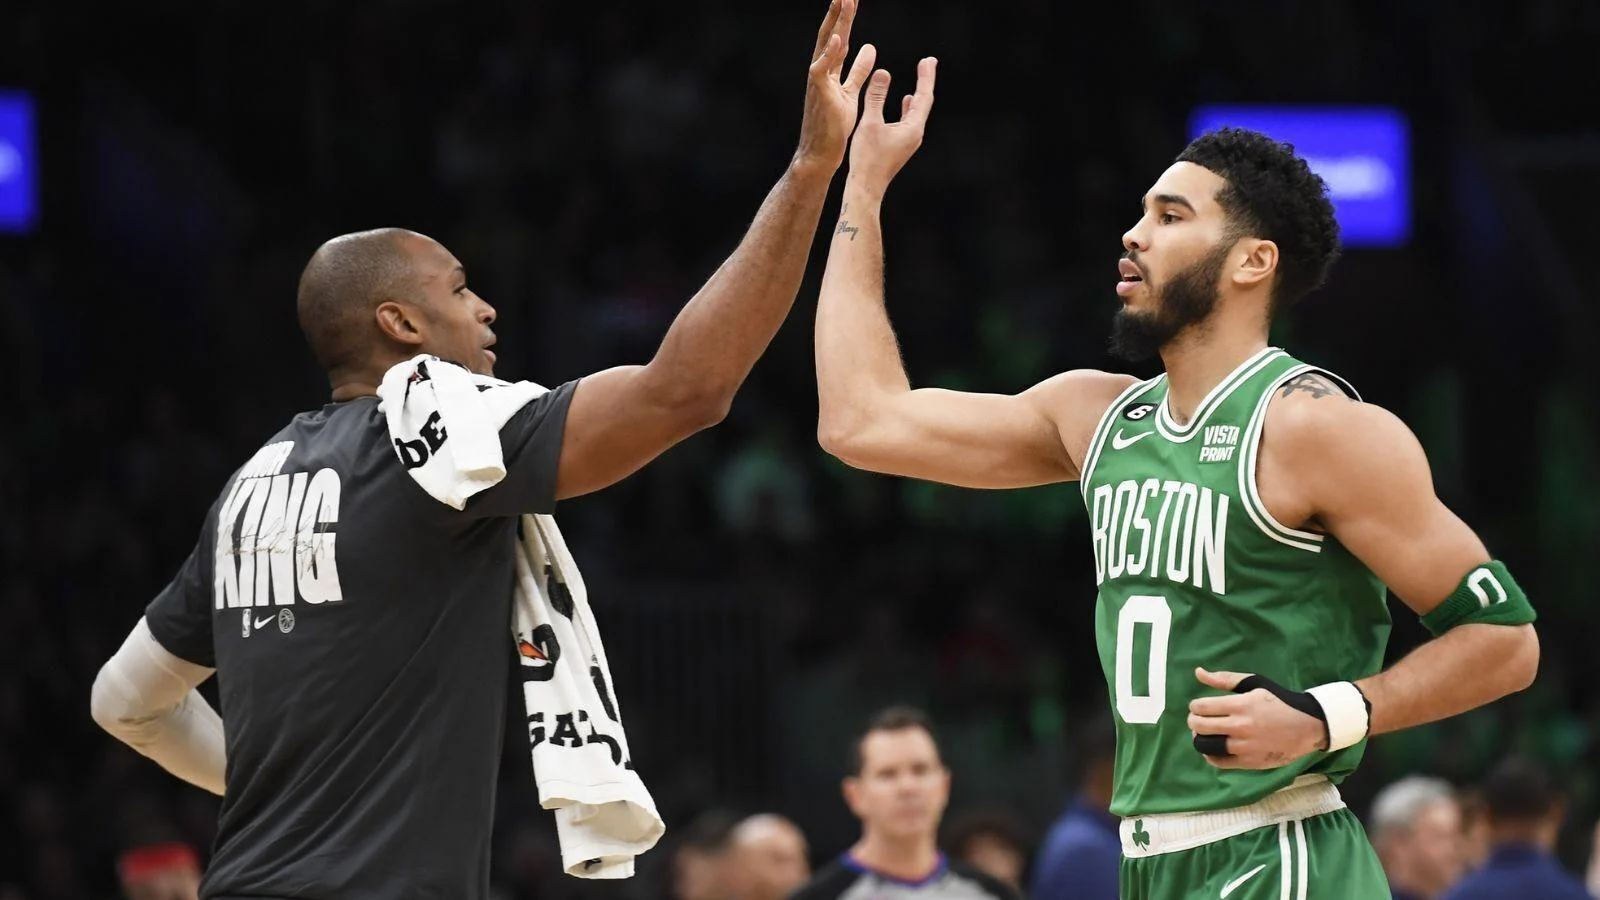 Boston Celtics vs. Dallas Mavericks in the NBA Finals Showdown, Clash of Titans